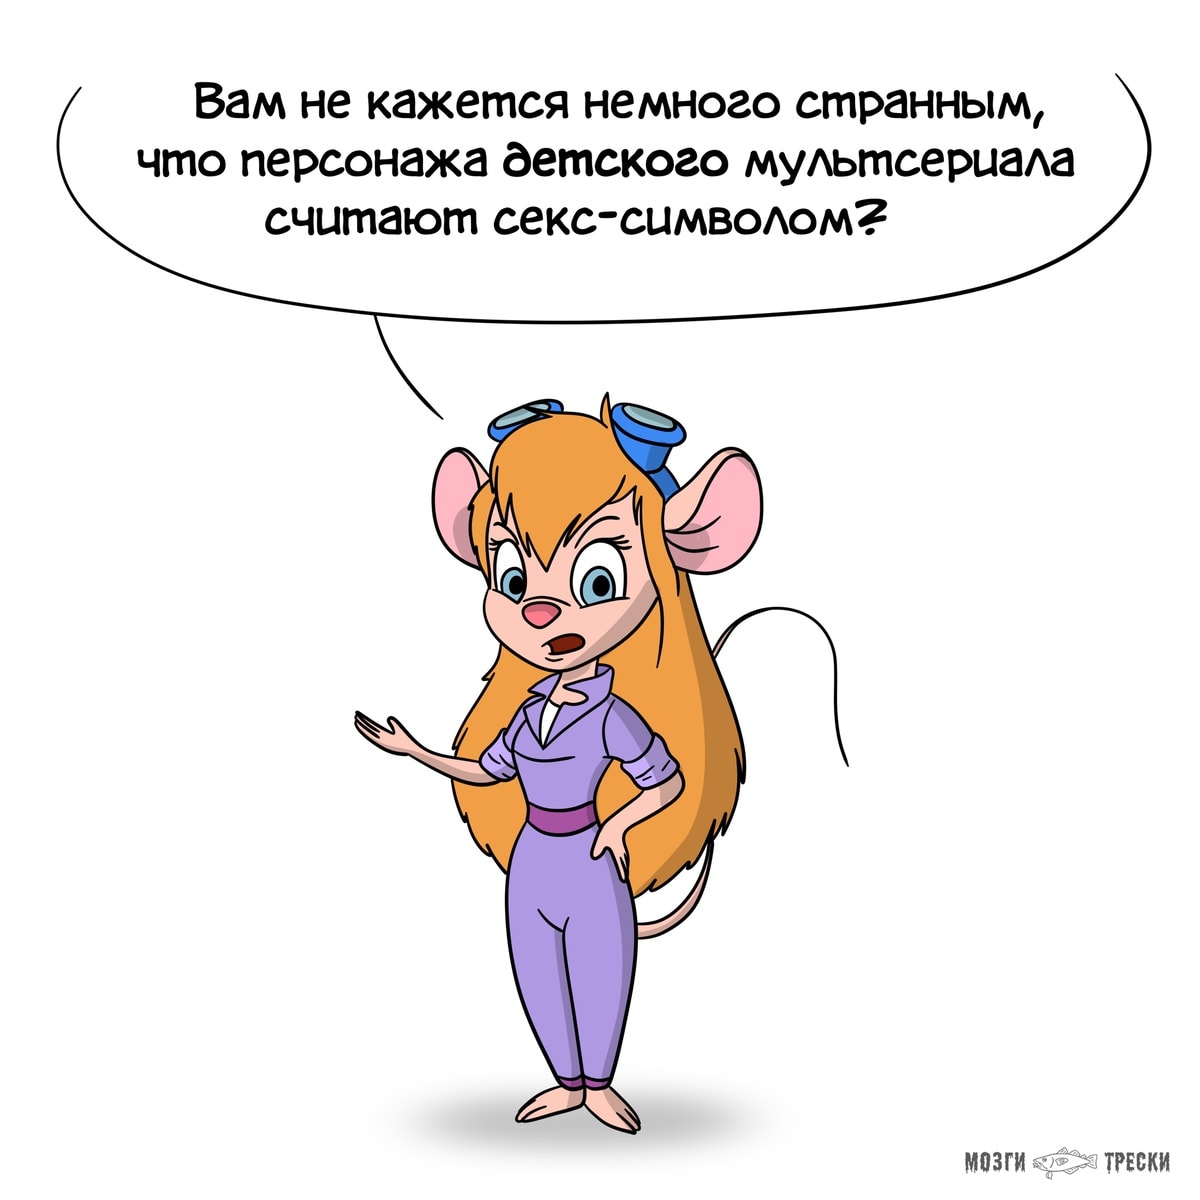 Автор комиксов «Мозги трески» представил, какие проблемы волнуют известных мультяшных крыс и мышей 38